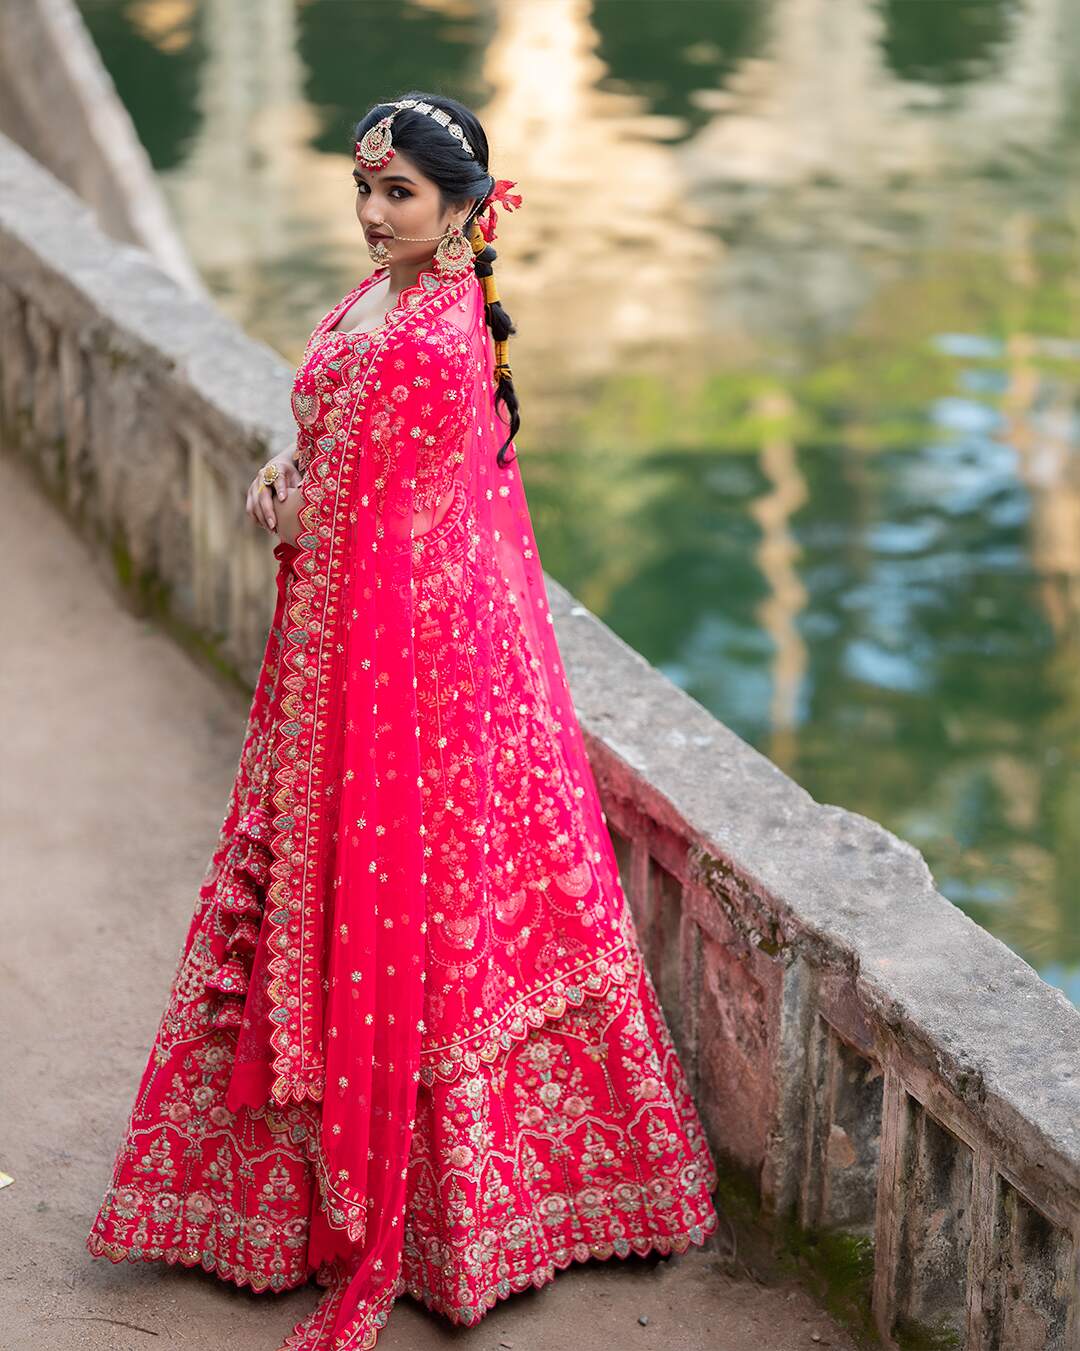 Homecoming Bridal Dress Designs || Homecoming Bridal Saree || Homecoming  Bride @AshiFashion - YouTube